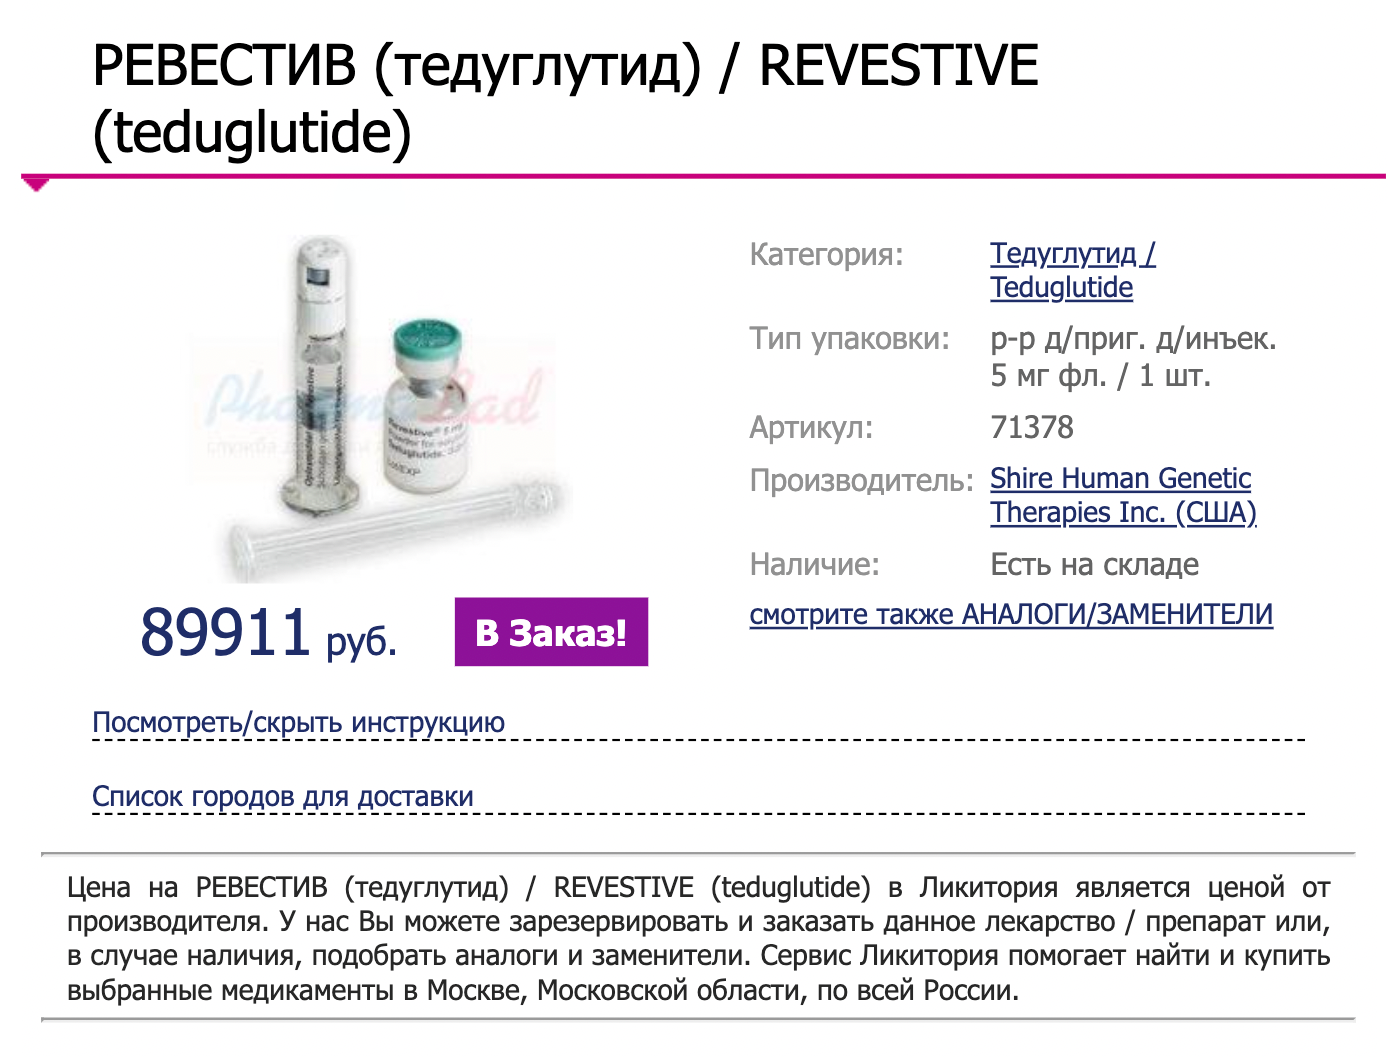 Тедуглутид тоже недешевый препарат, и он входит в региональные льготы в Башкирии. Источник: likitoriya.com